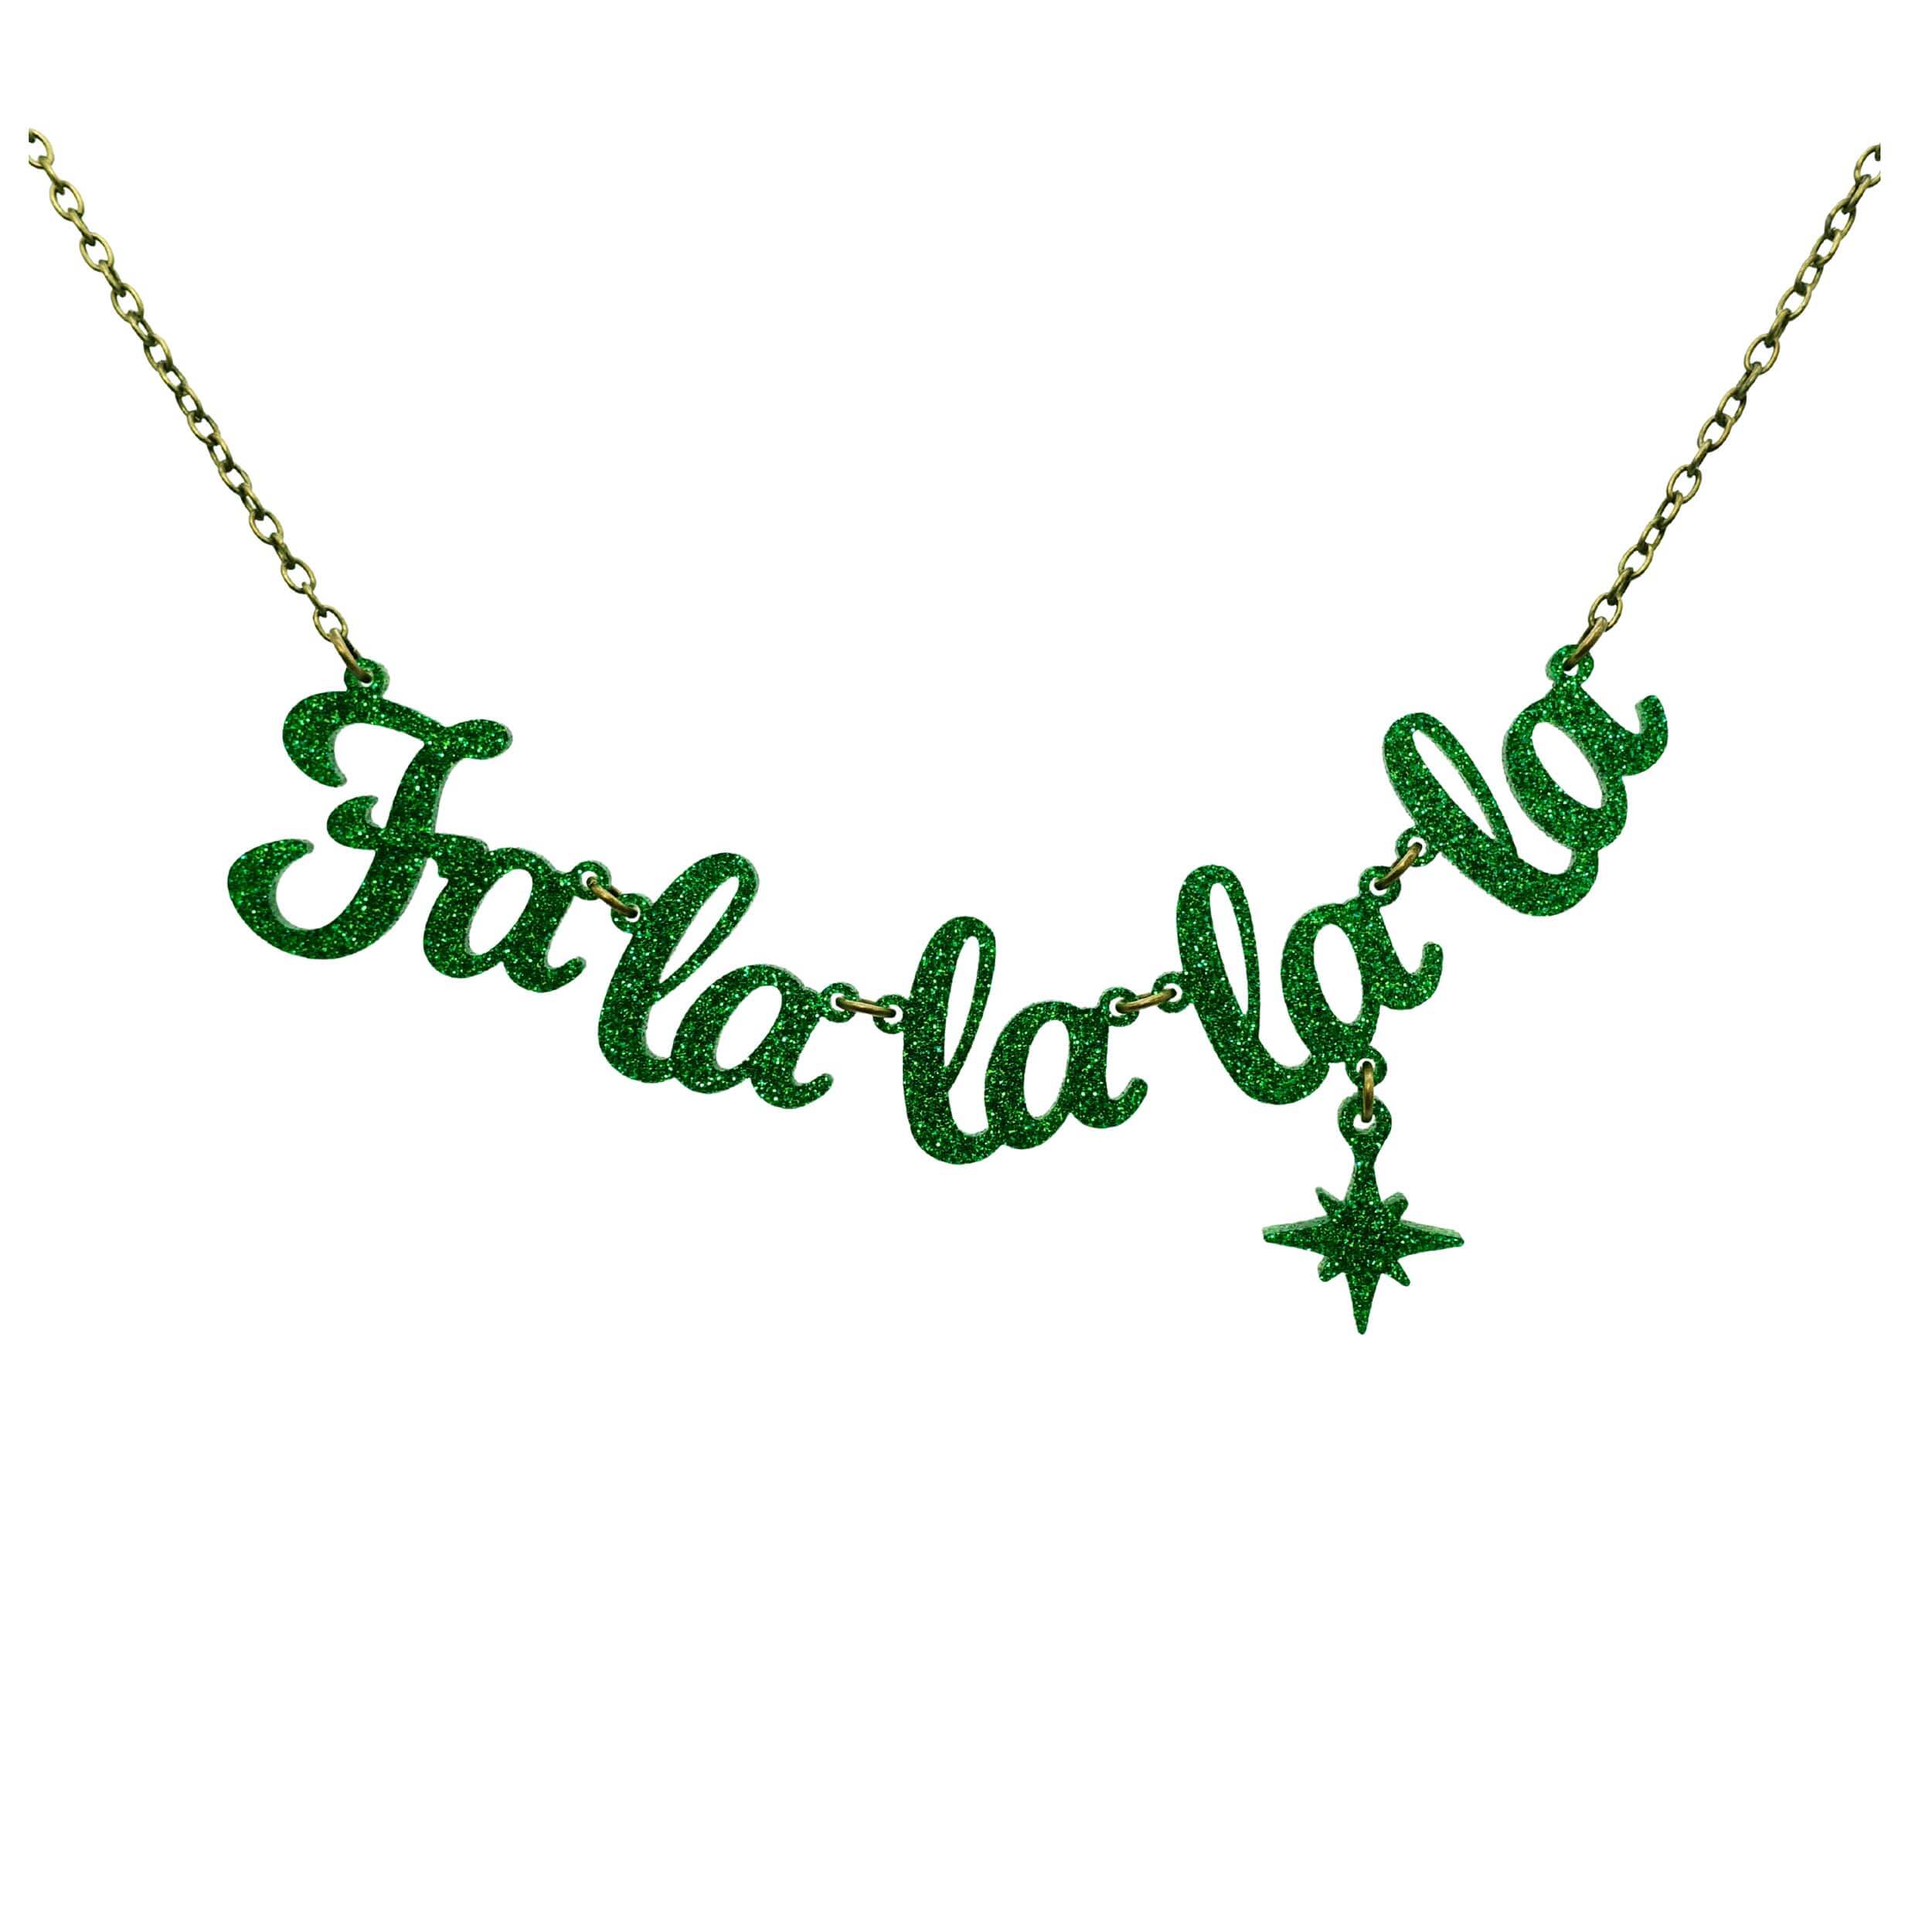 Fa la la la la necklace in green glitter shown hanging against a white background. 